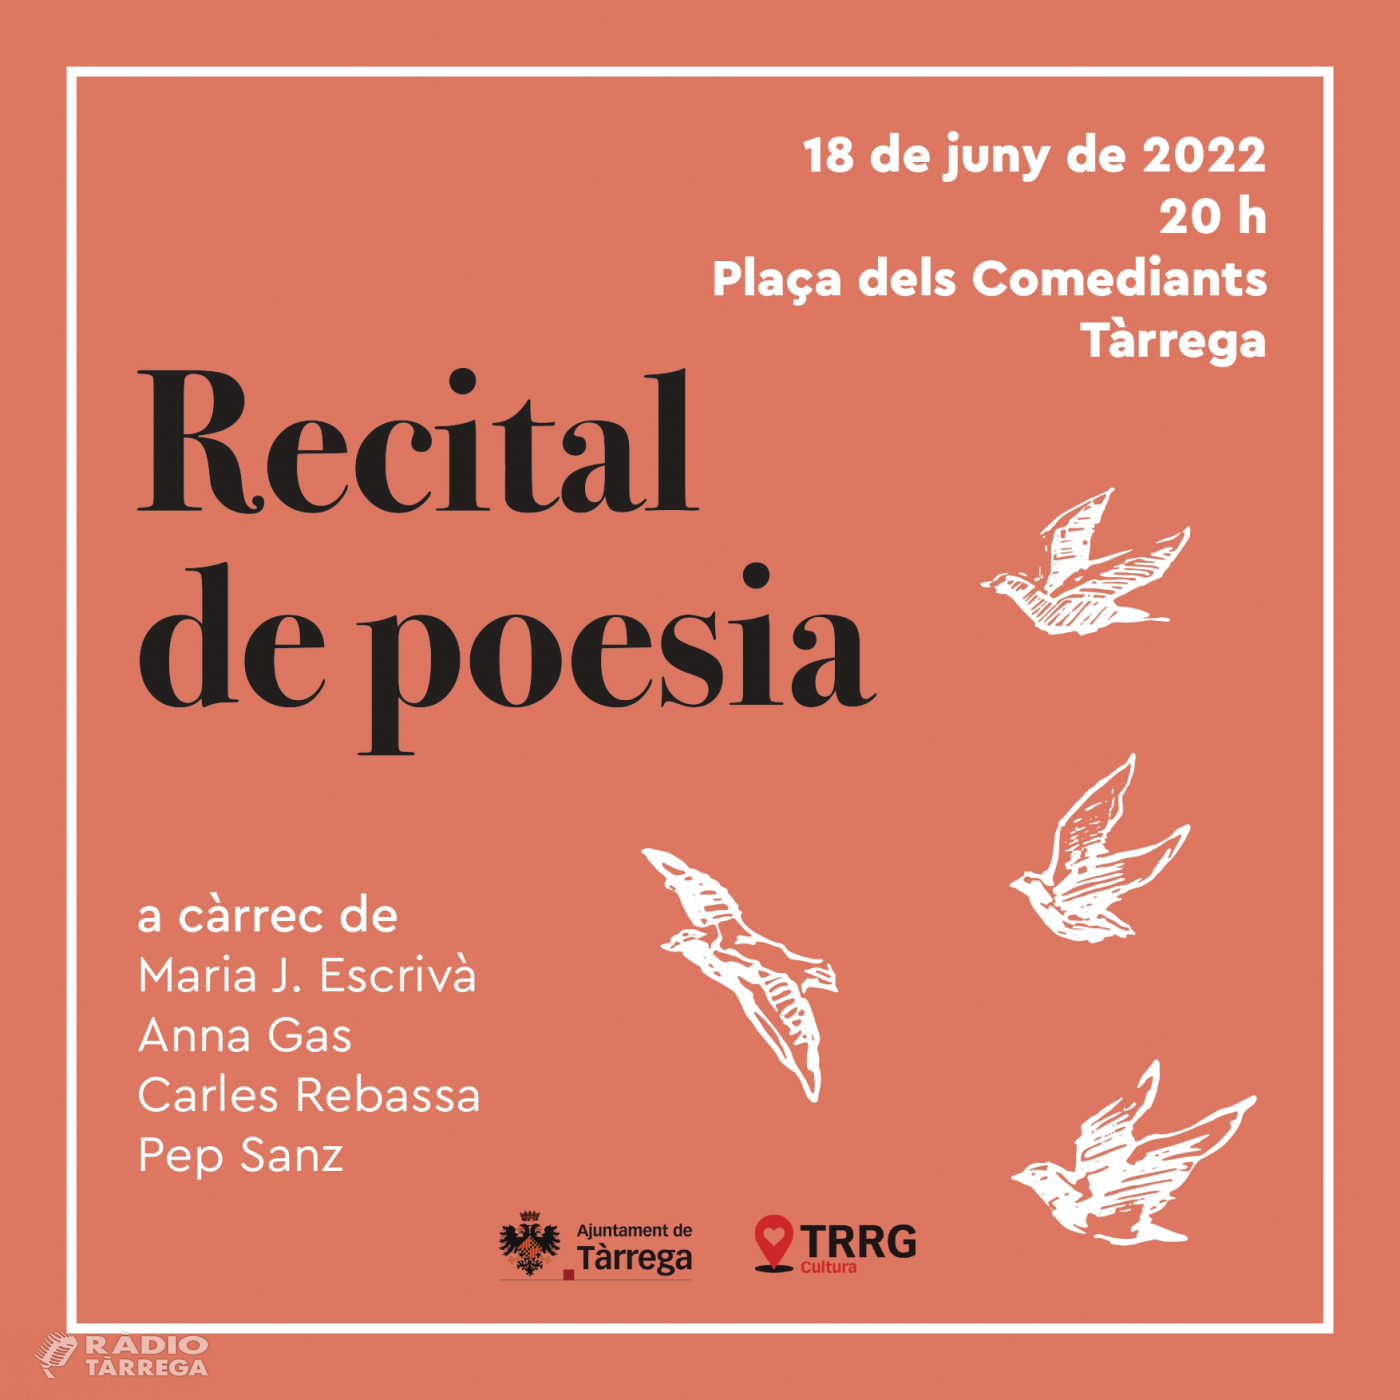 La Regidoria de Cultura de Tàrrega organitza un recital poètic amb diversos autors dels Països Catalans